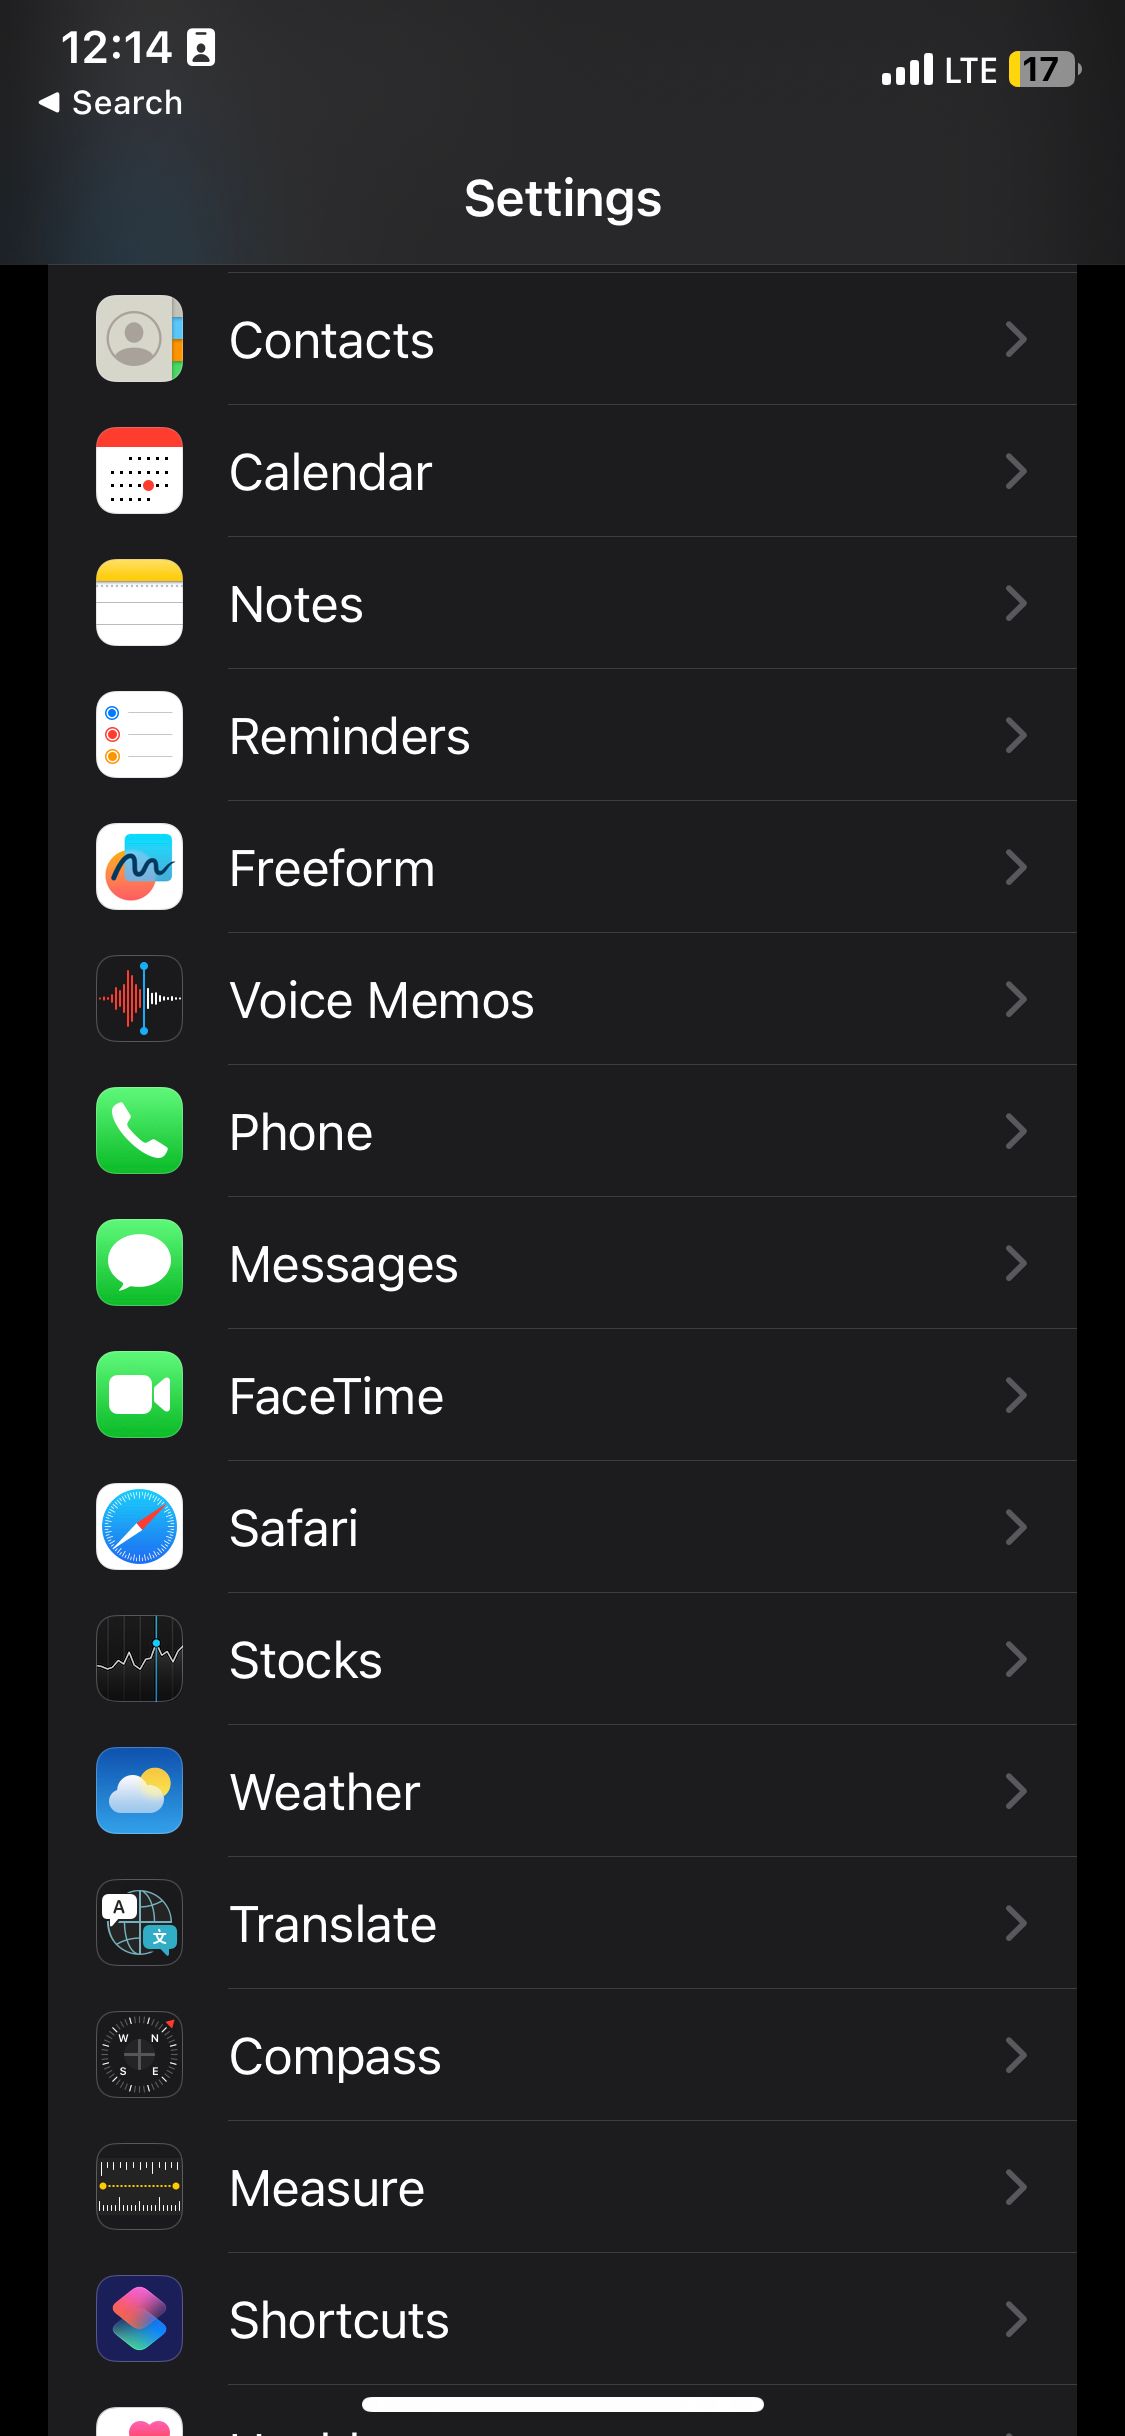 Safari in the settings menu